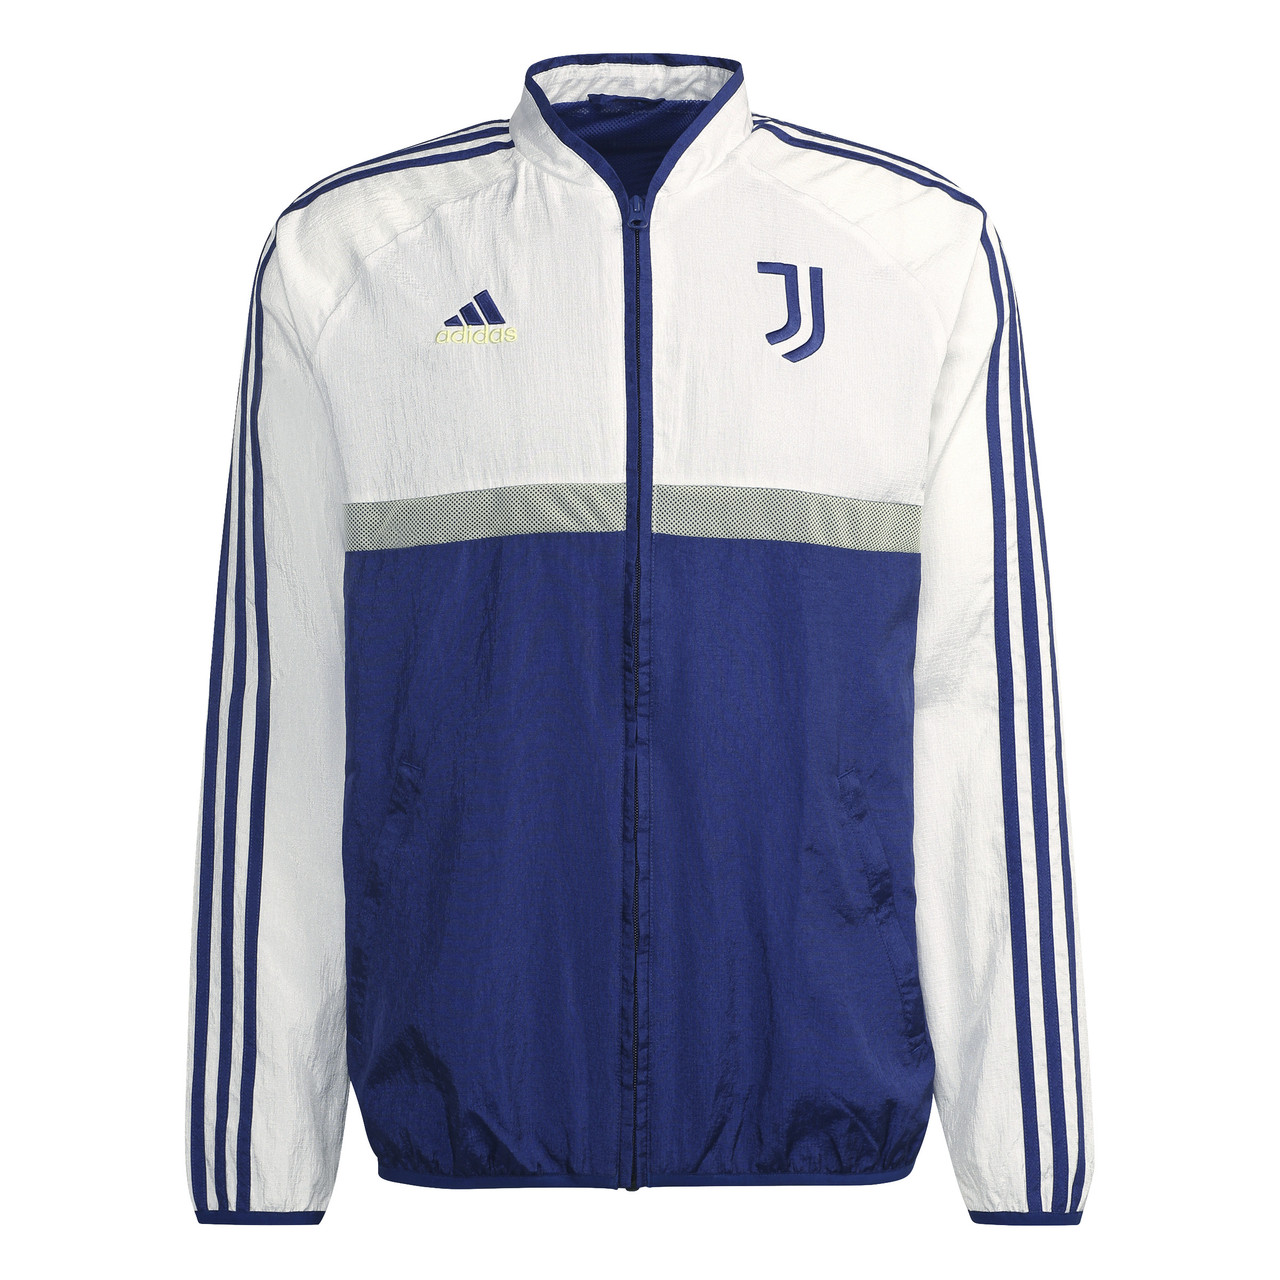 adidas Juventus Icons Woven Blue/White 2021/22 - Chicago